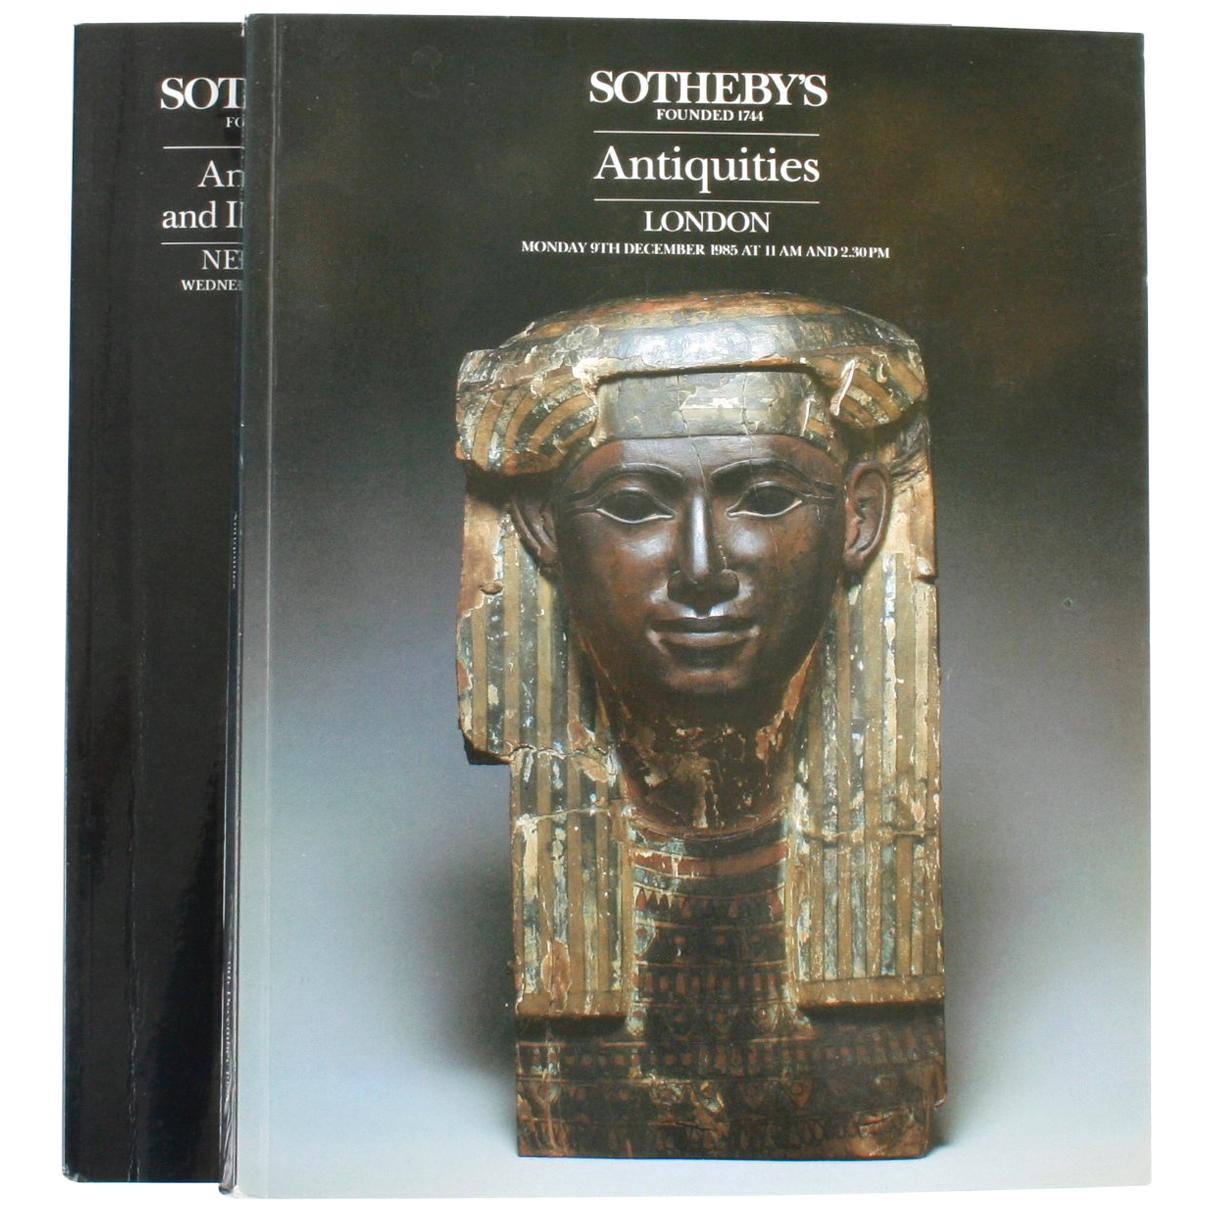 Ein Paar Sotheby's-Kataloge über Antiquitäten und islamische Kunst